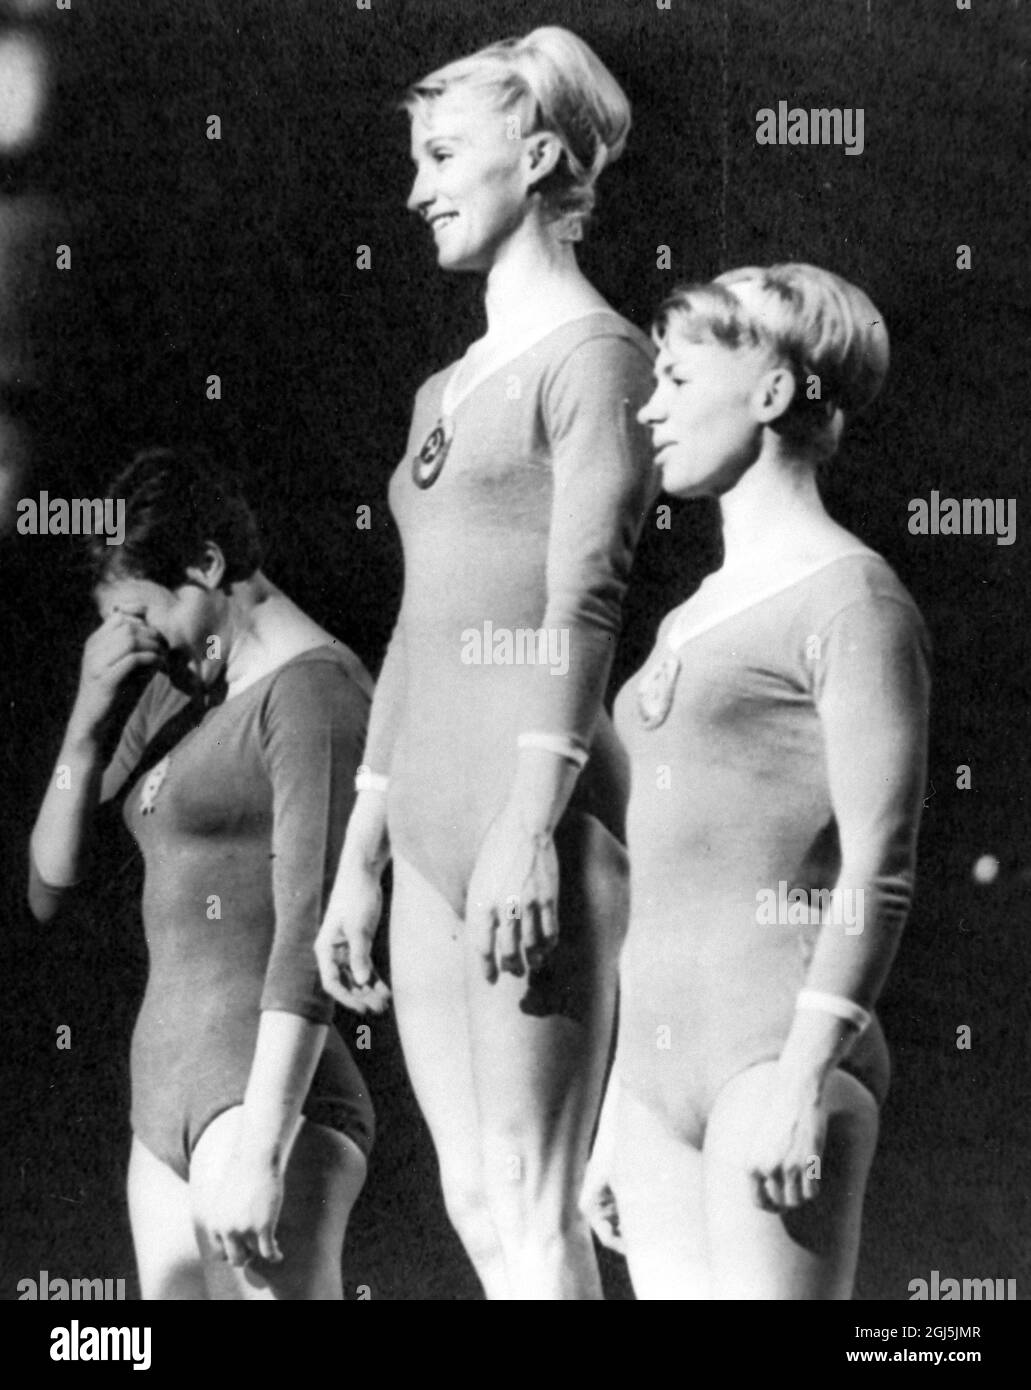 OLYMPISCHE SPIELE, OLYMPISCHE SPORTSPIELE - XVIII. OLYMPIADE IN TOKYO, JAPAN - SIEGER AUF DEM PODIUM ; 22. OKTOBER 1964 Stockfoto